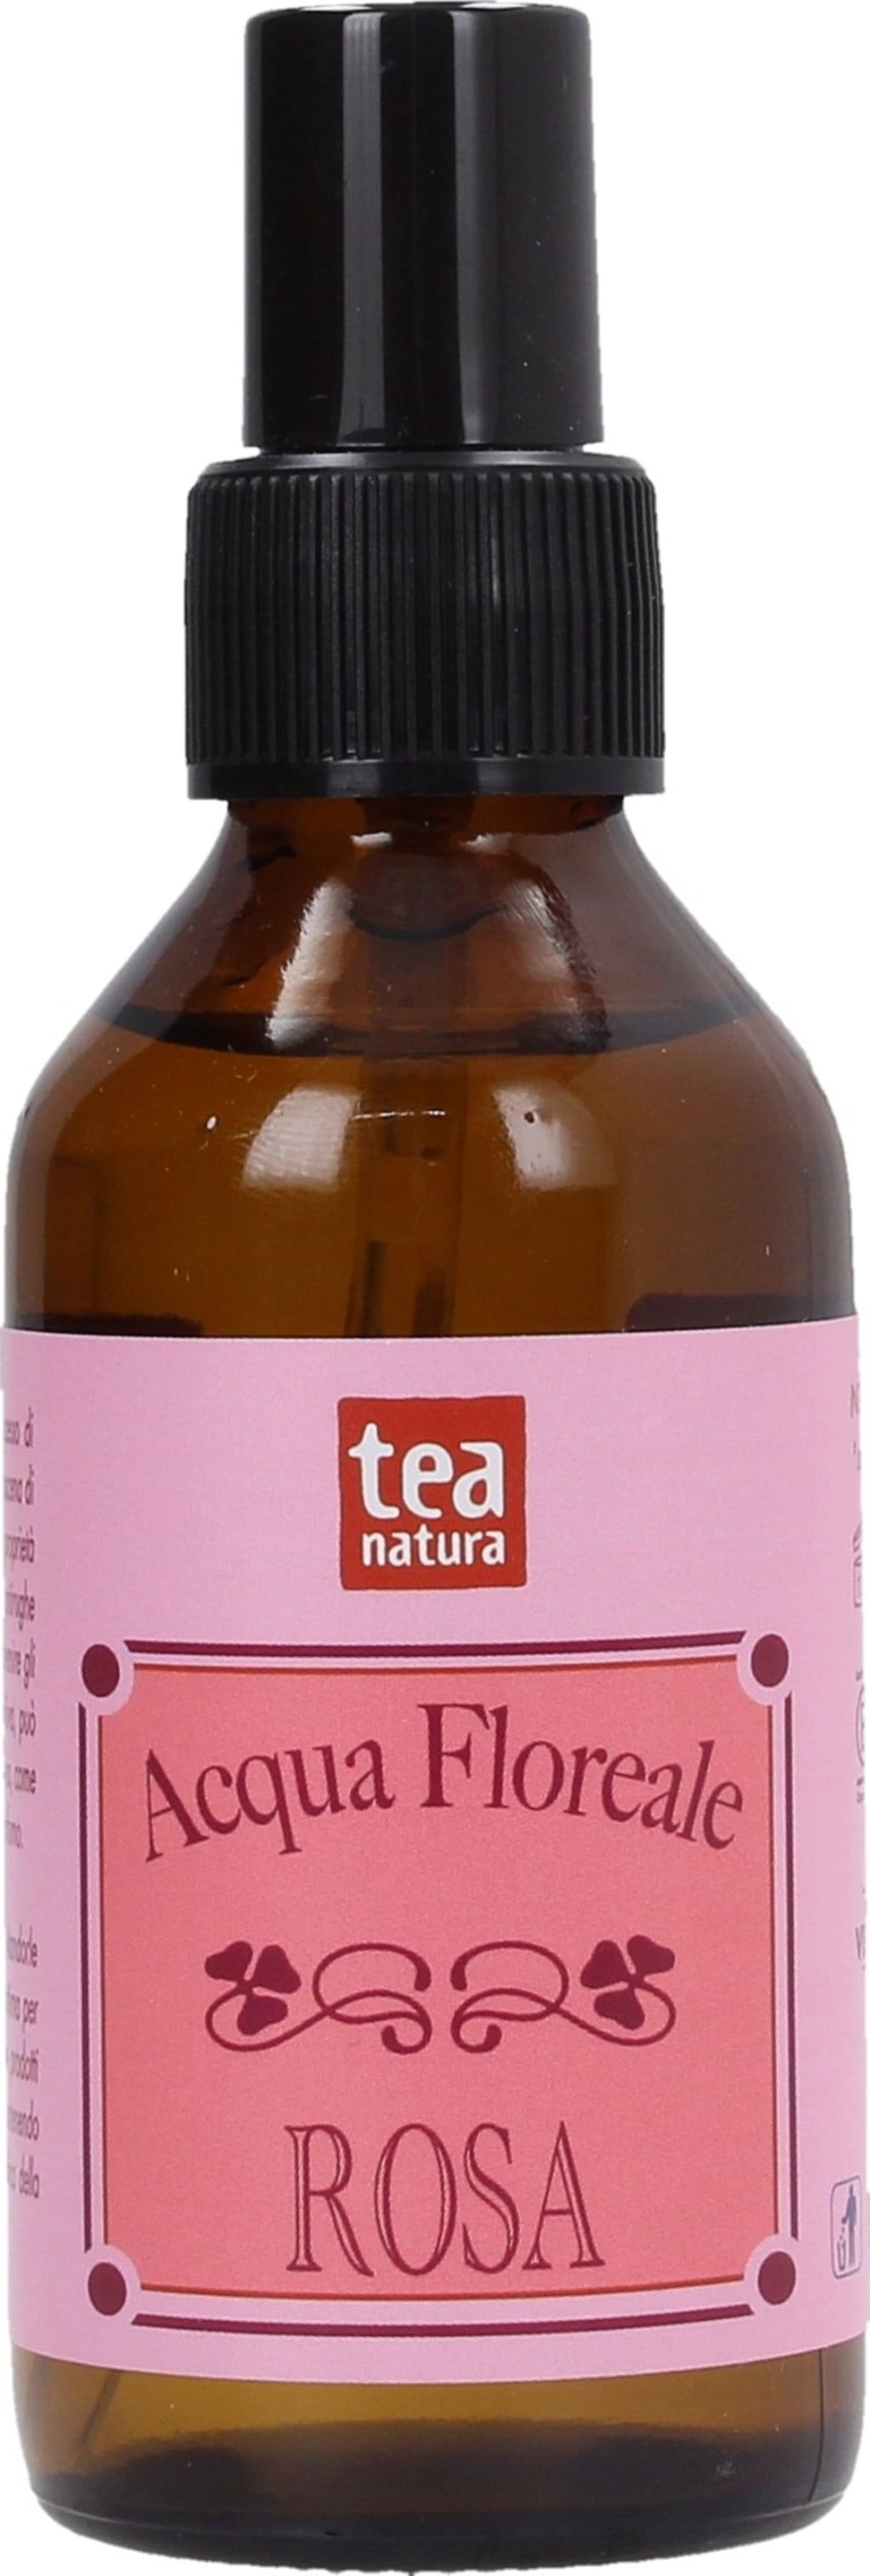 TEA Natura Acqua Floreale Rosa - 100 ml